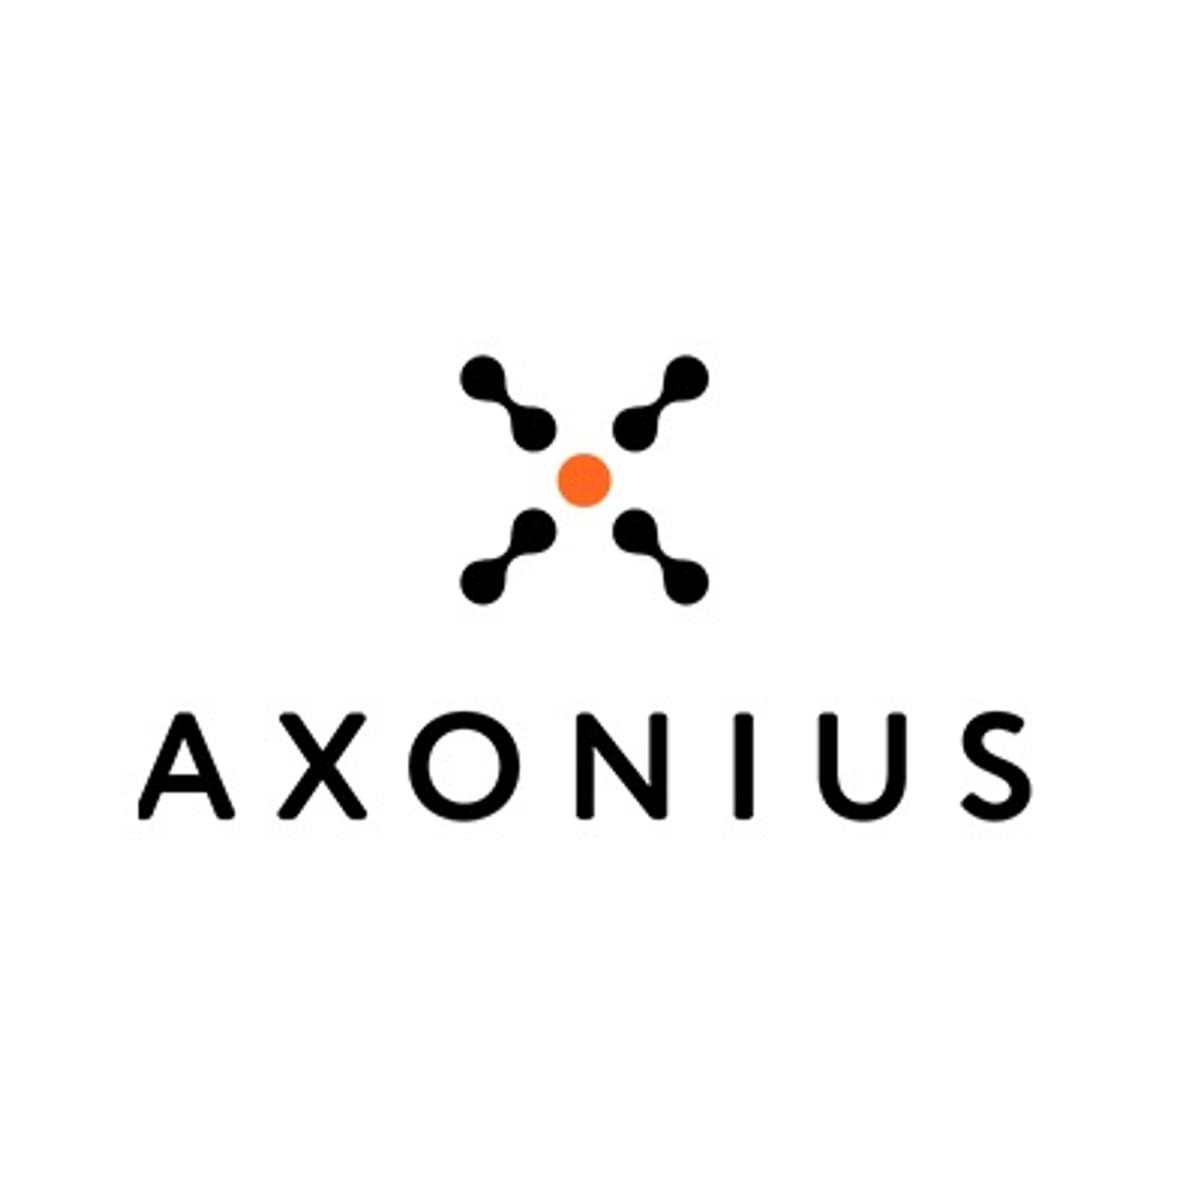 Kapitaalinjectie voor Cybersecurity Asset Management specialist Axonius image